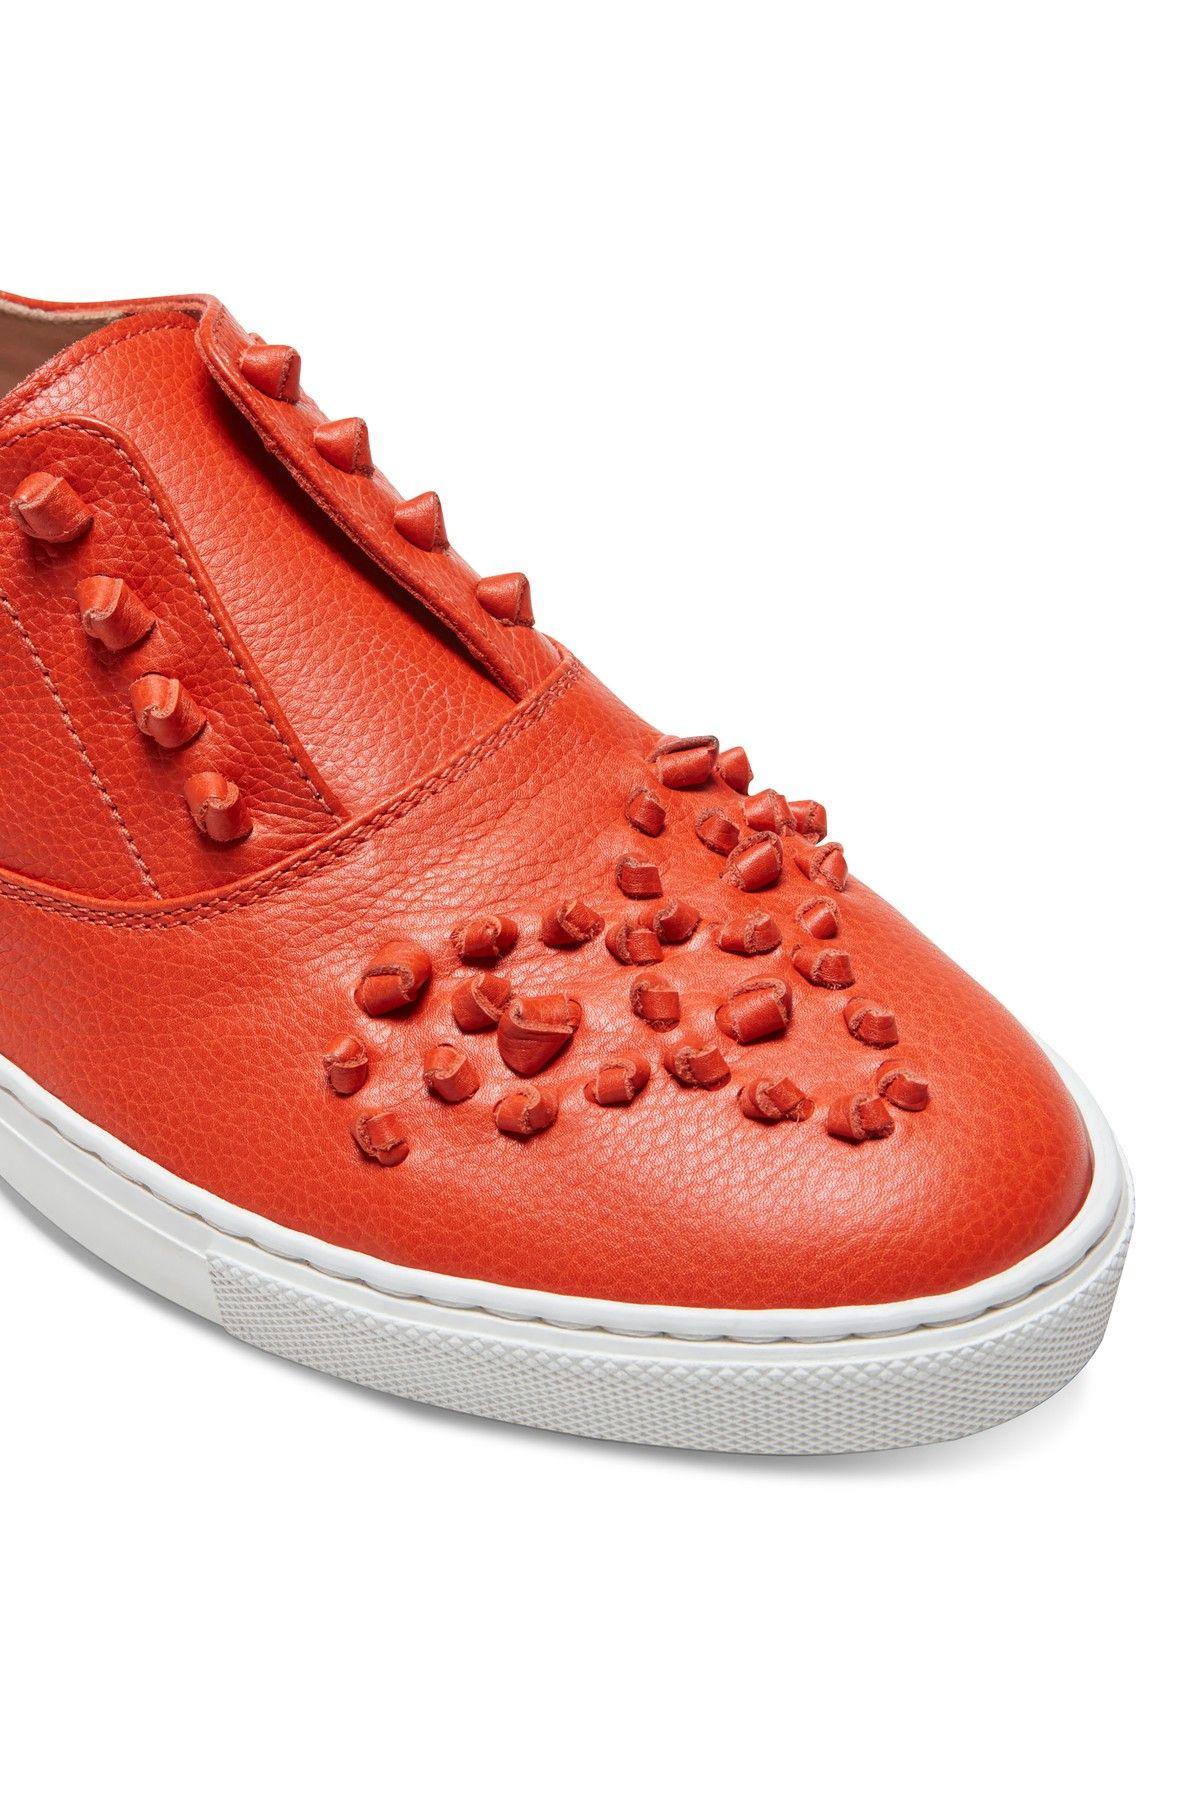 Fratelli Rossetti Hobo Sport Sneakers in Red | Lyst